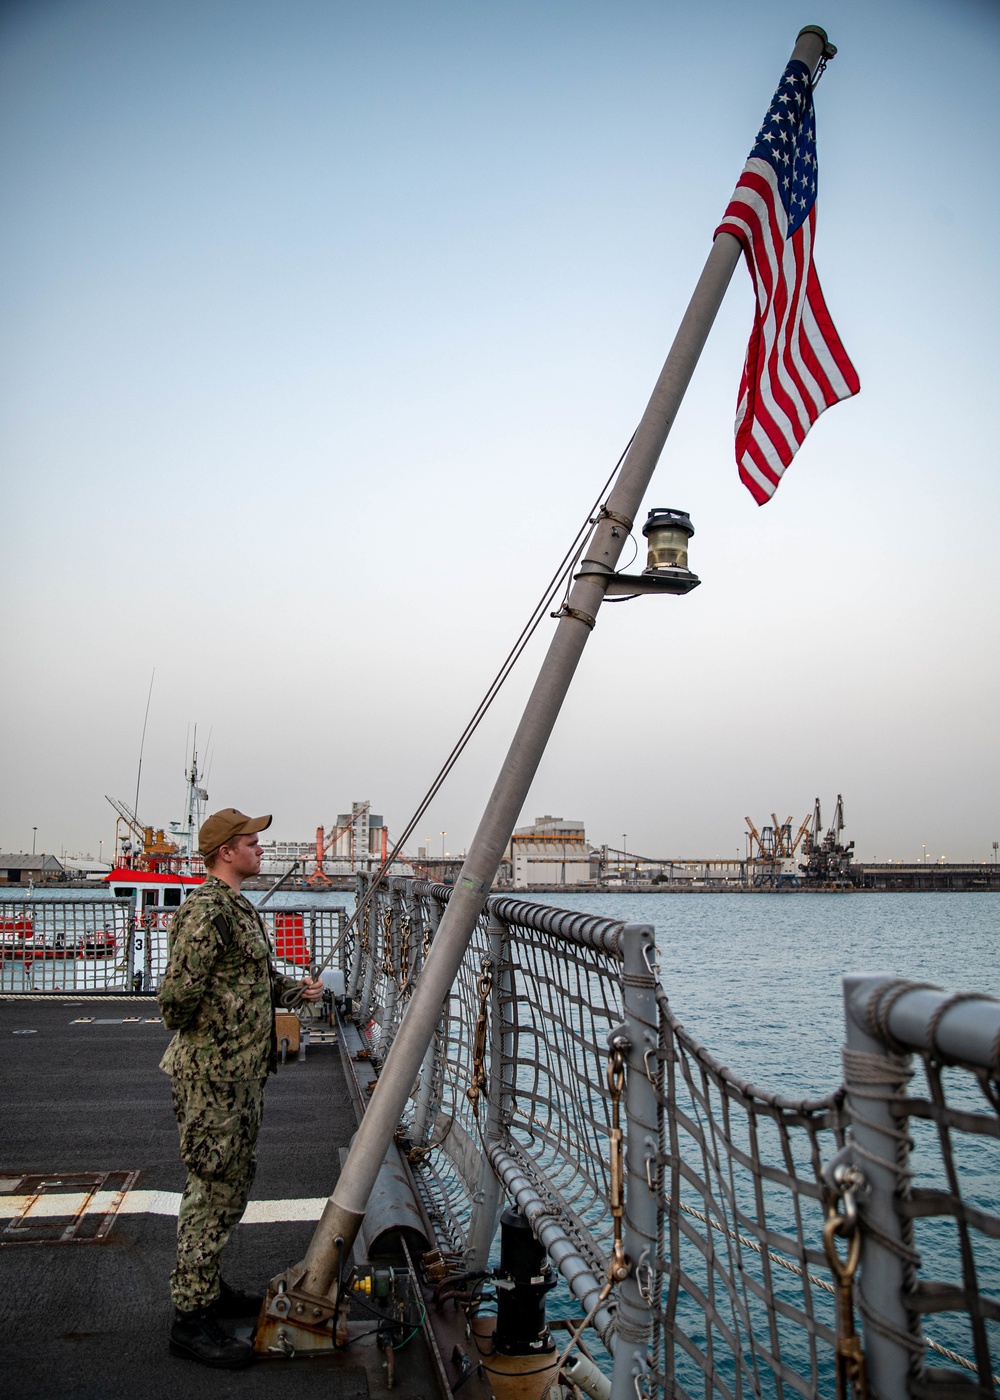 USS Sioux City Arrives in Jeddah Saudi Arabia